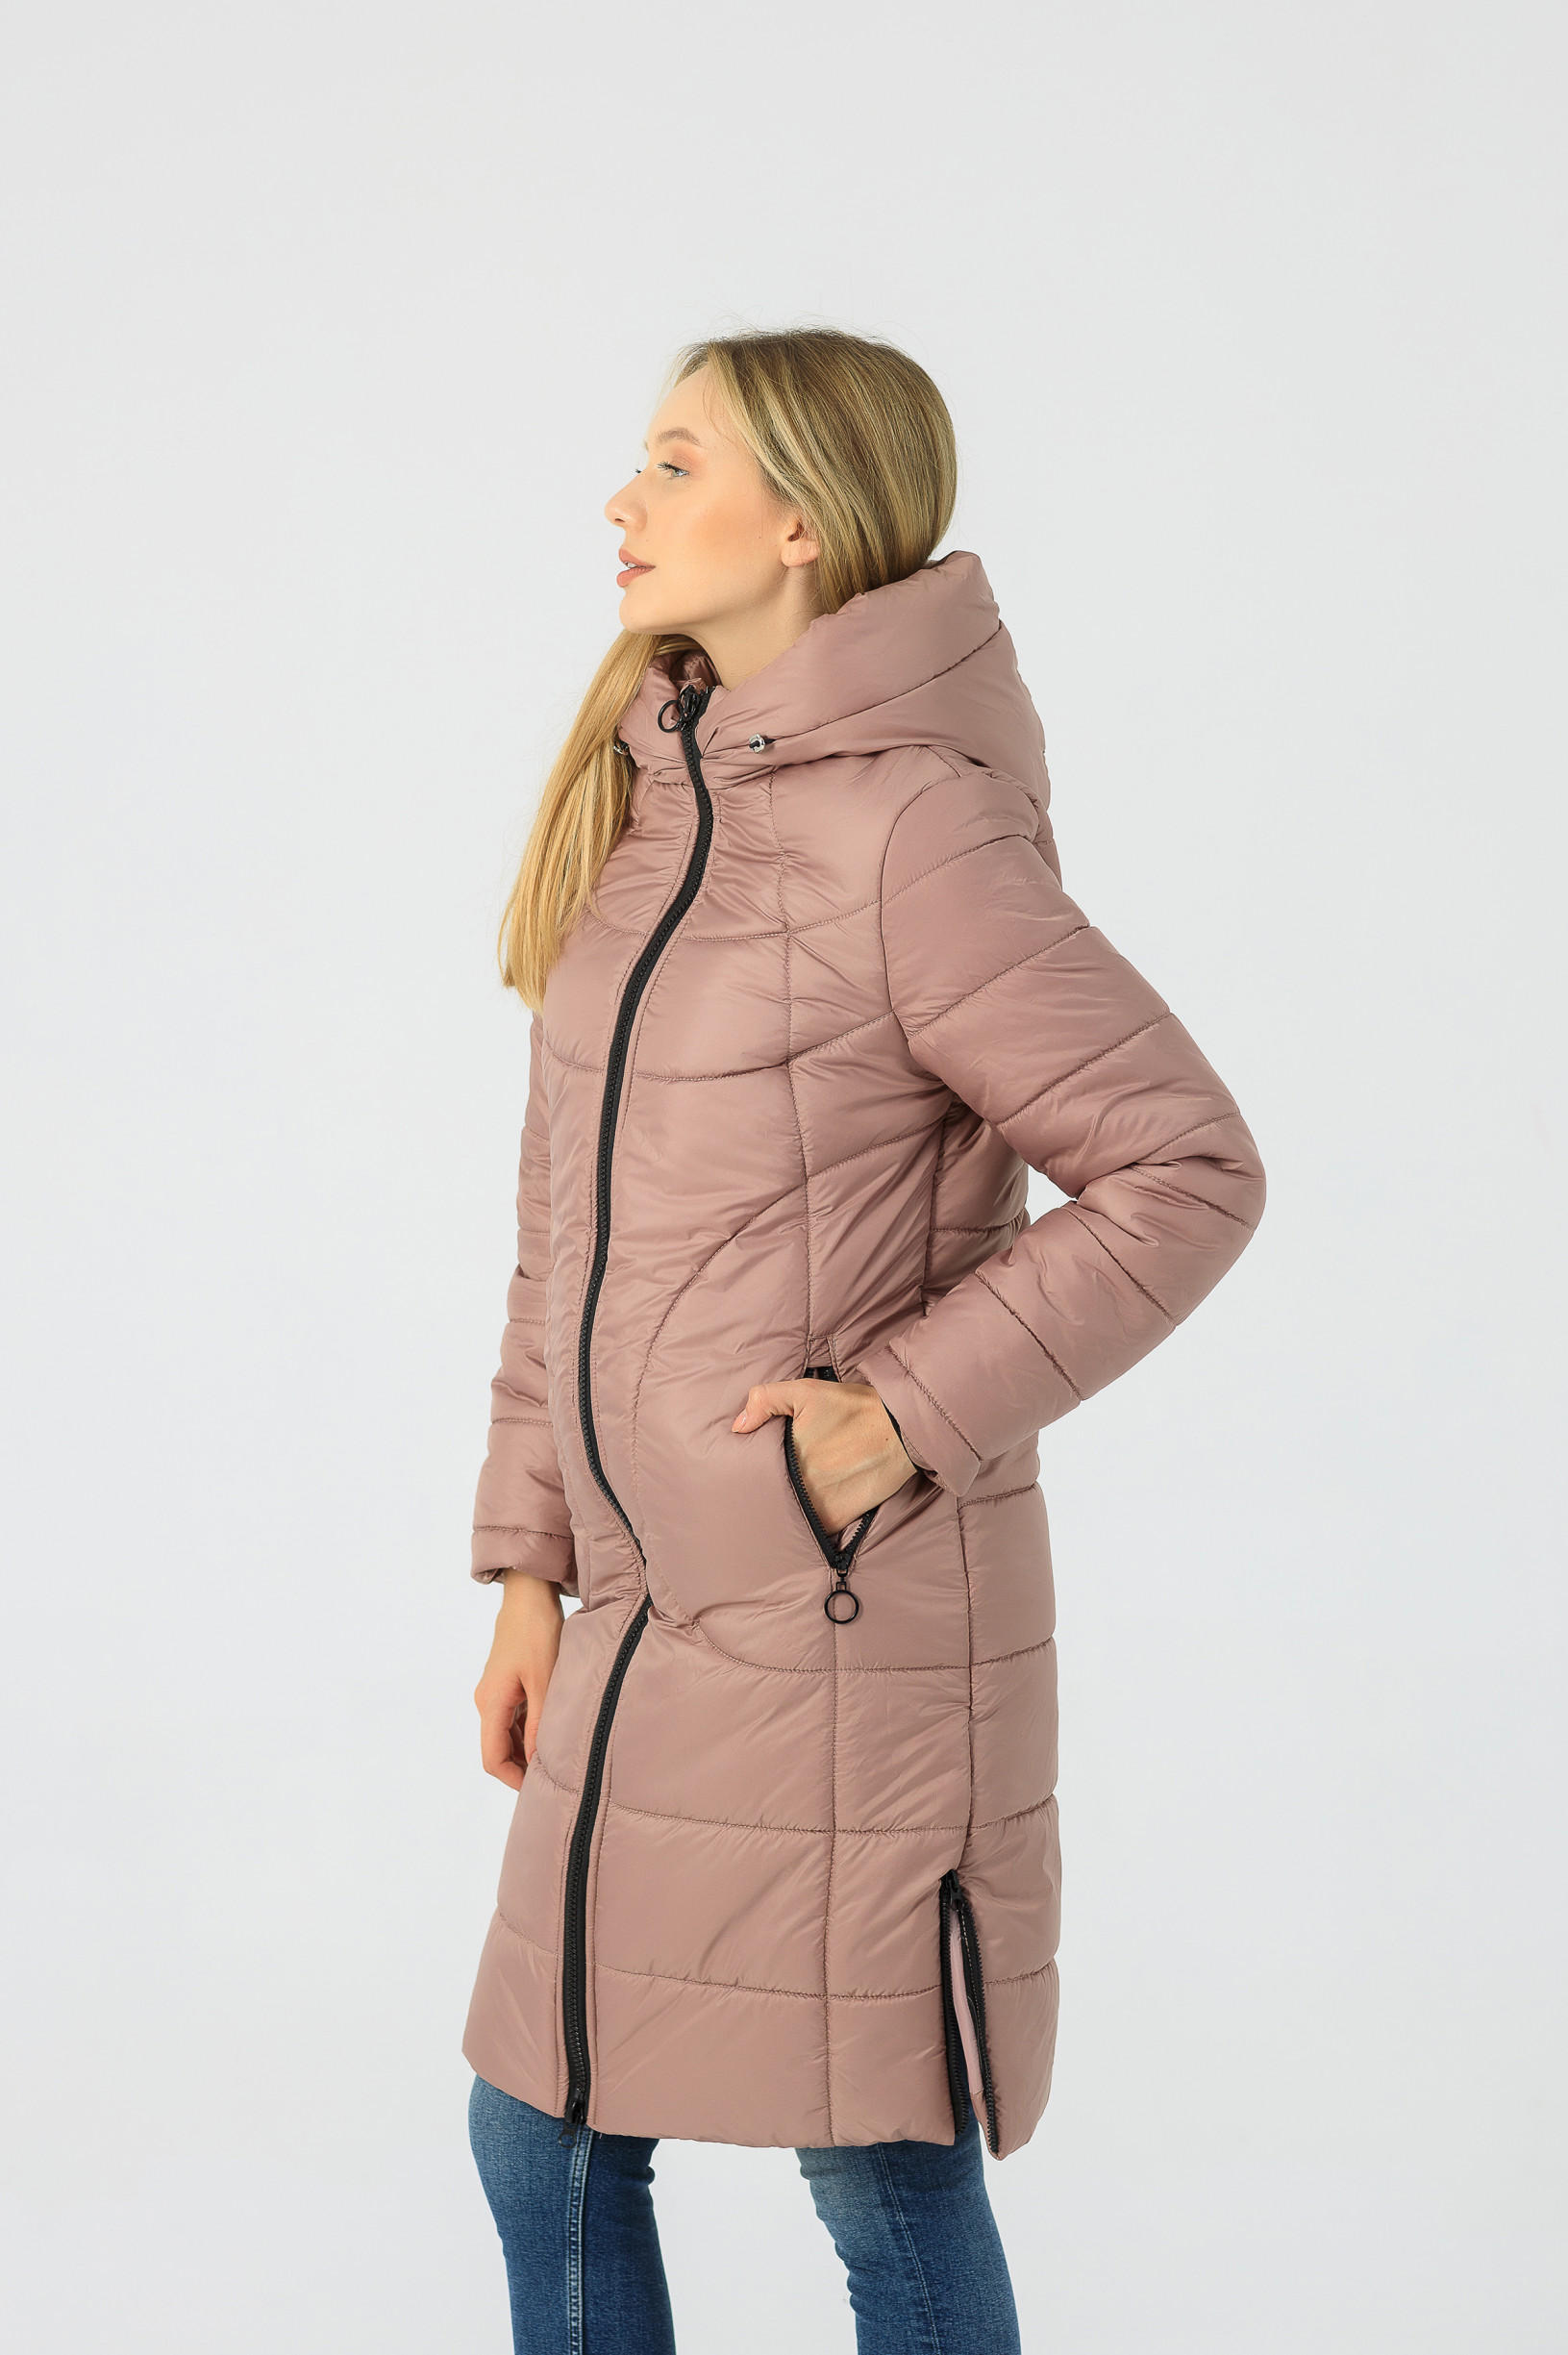 Зимнее женское пальто Шейла розового цвета